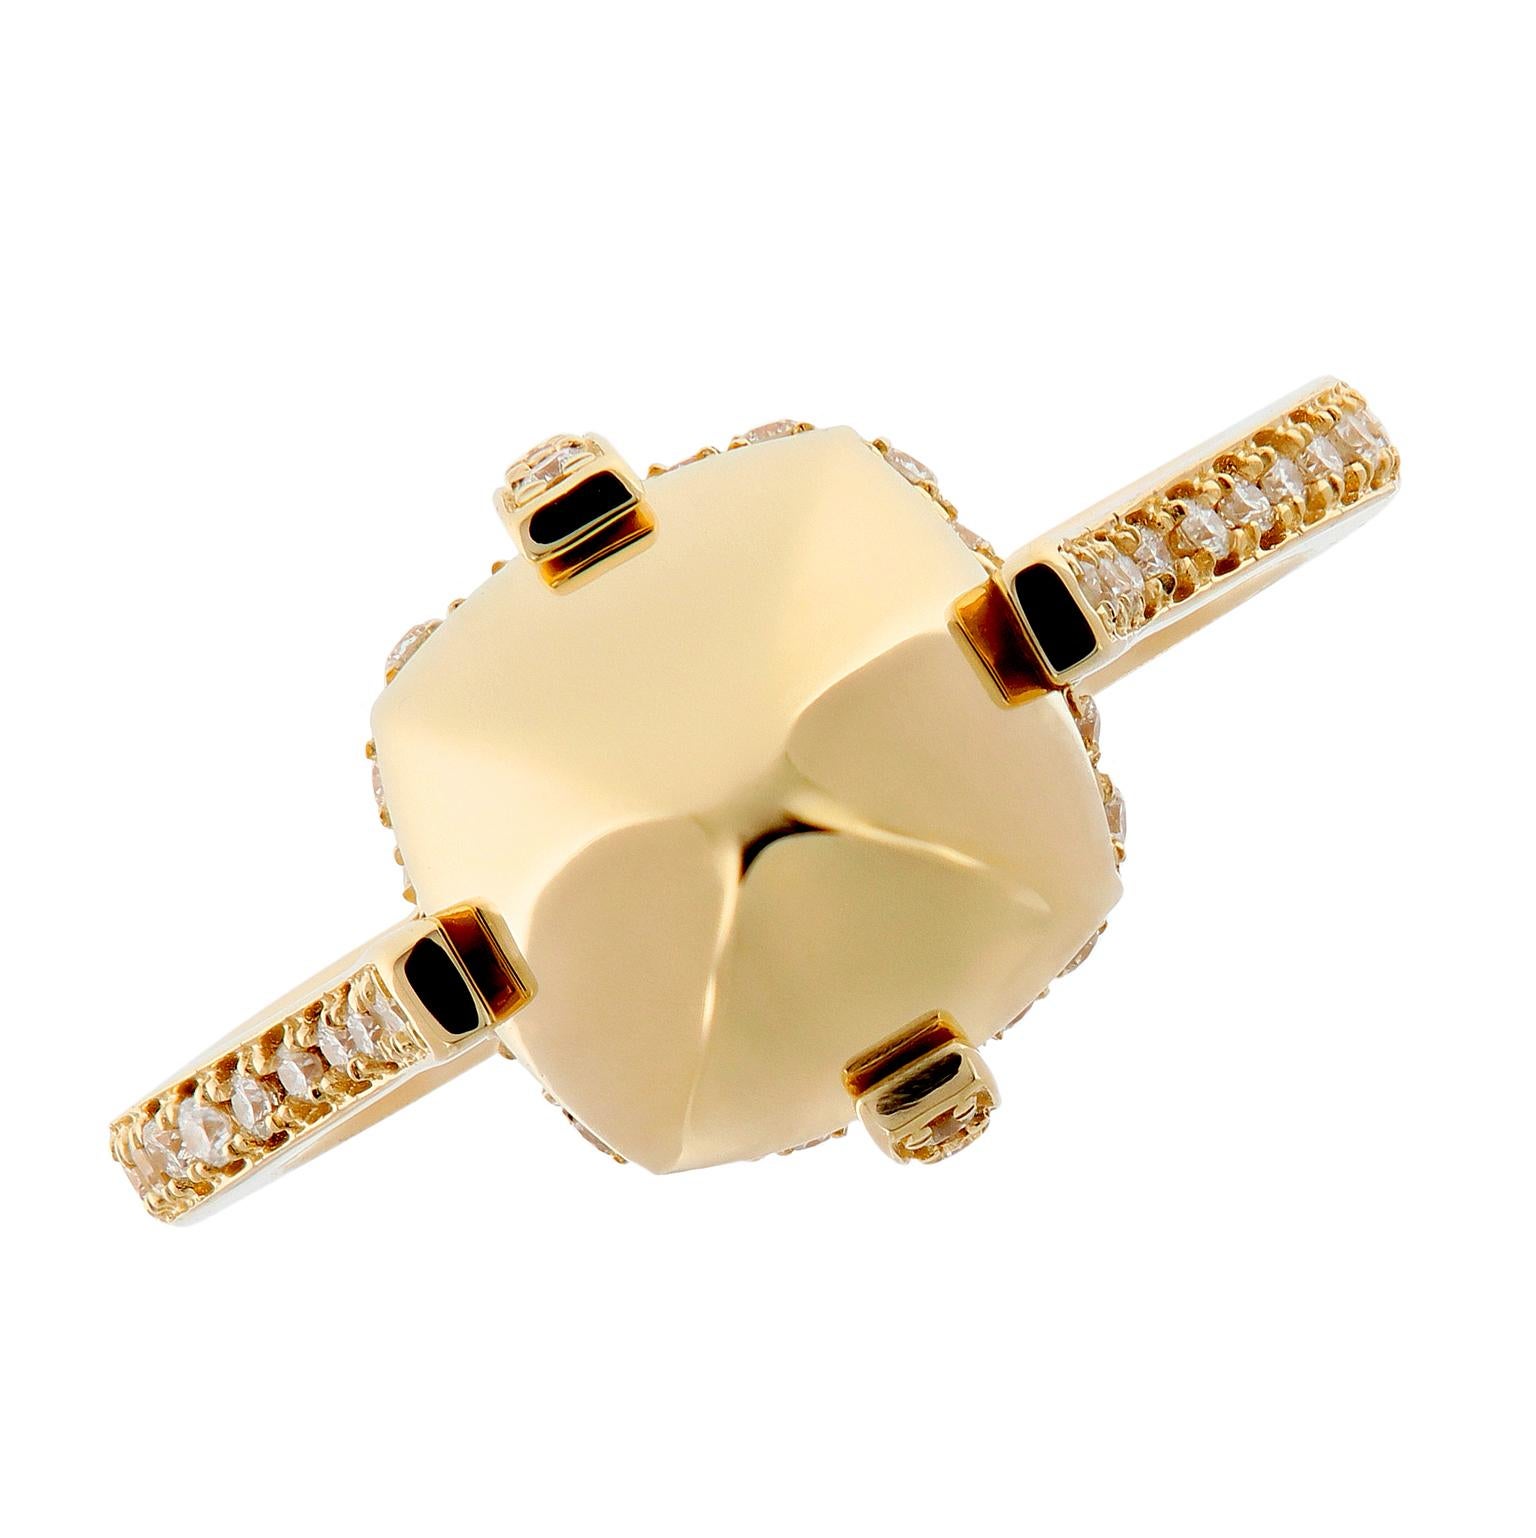 18 Karat Yellow Gold Surgarloaf Pave Diamond Ring by Goshwara